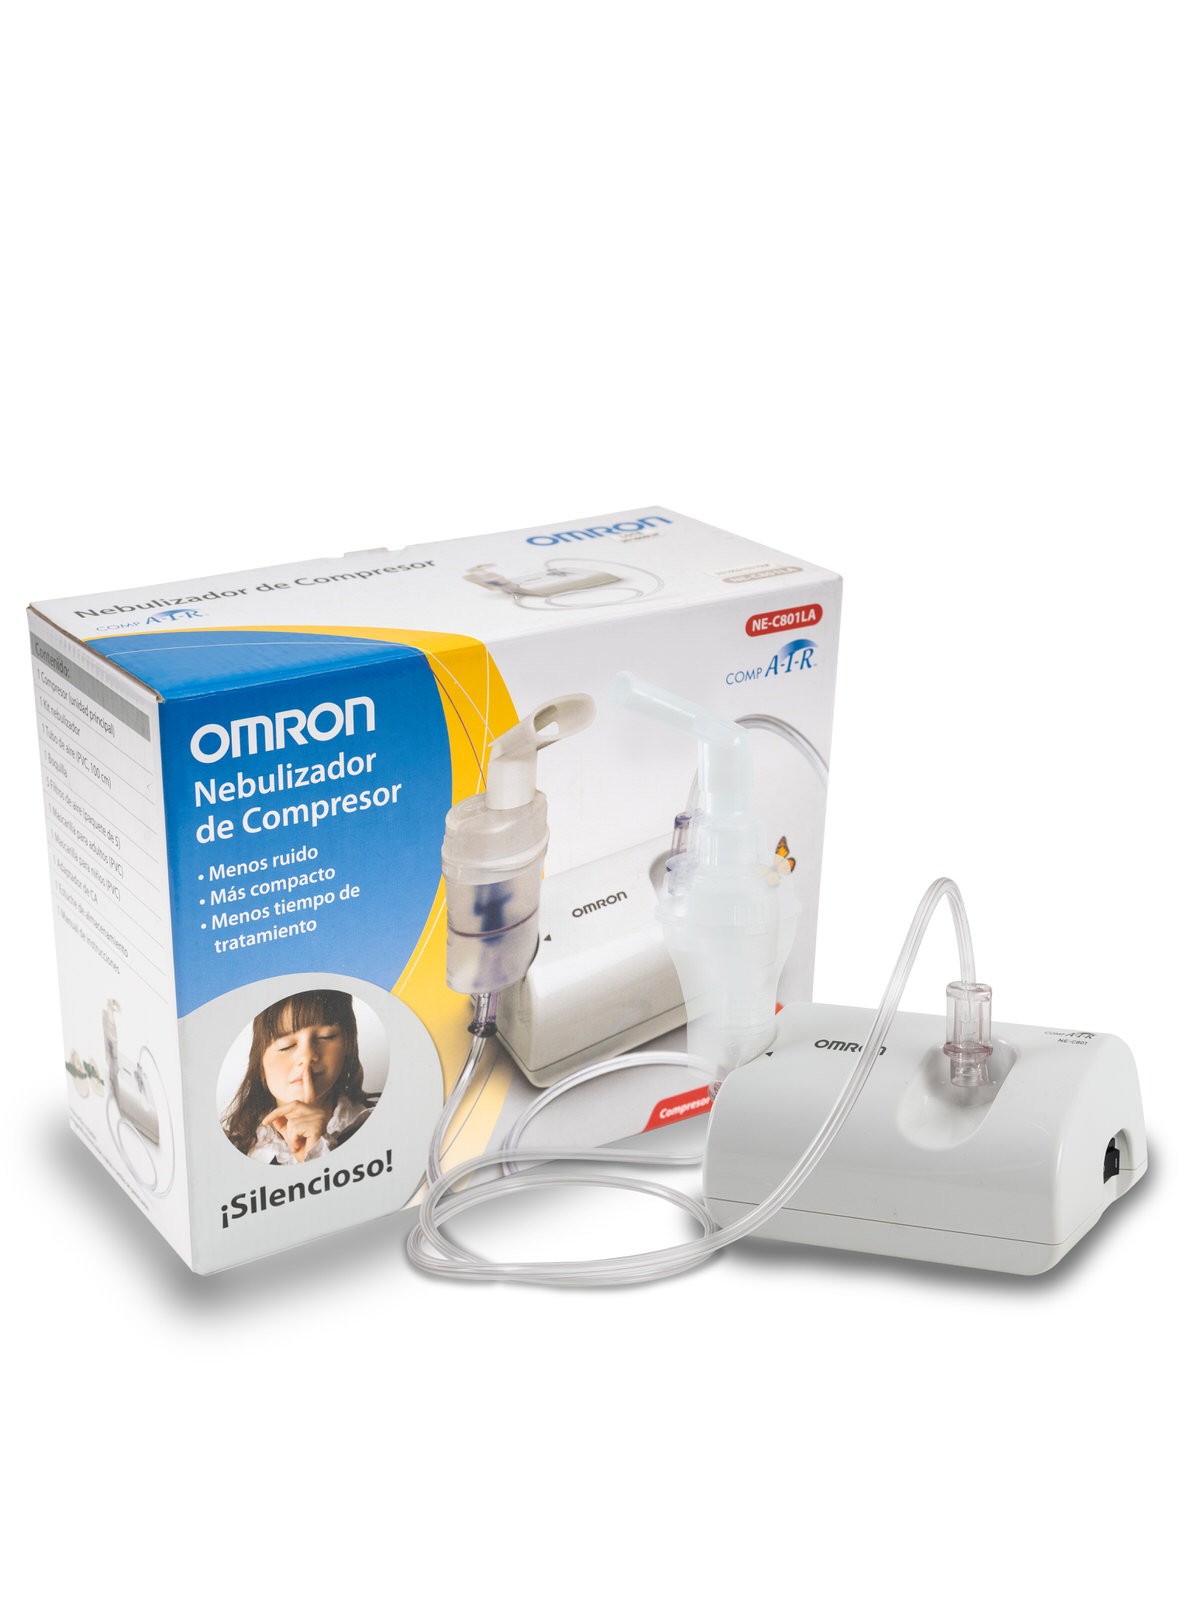 Los nebulizadores Omron tienen una Tecnología de Válvula Virtual que lo hace muy silencioso y permite reducir al máximo el desperdicio de medicamento.